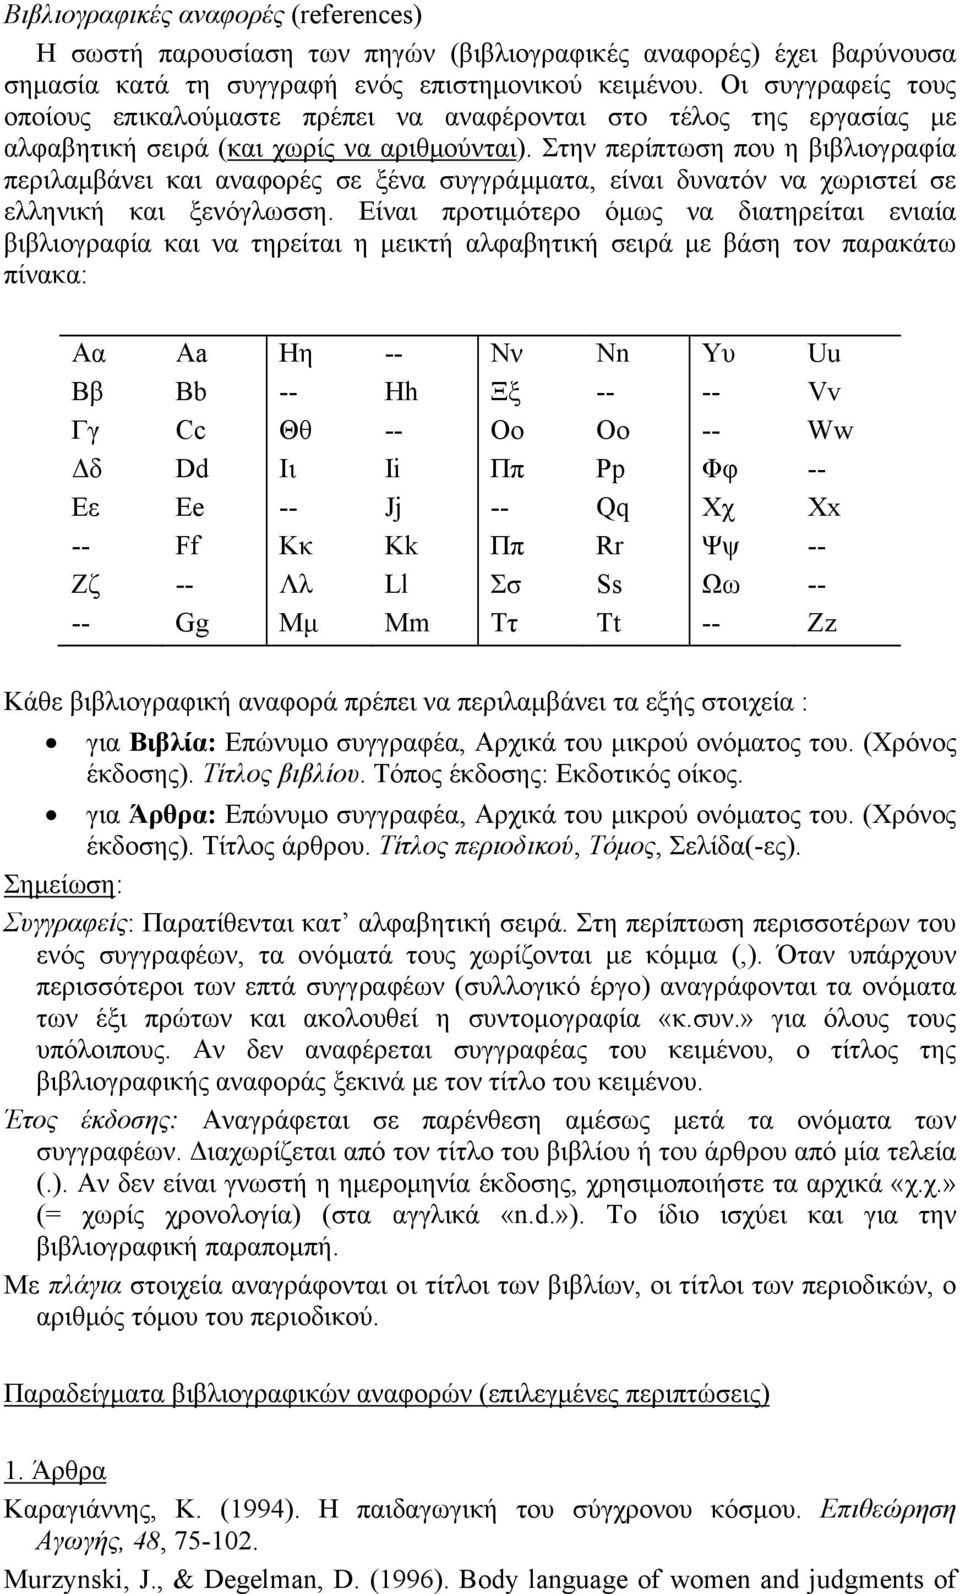 Στην περίπτωση που η βιβλιογραφία περιλαμβάνει και αναφορές σε ξένα συγγράμματα, είναι δυνατόν να χωριστεί σε ελληνική και ξενόγλωσση.